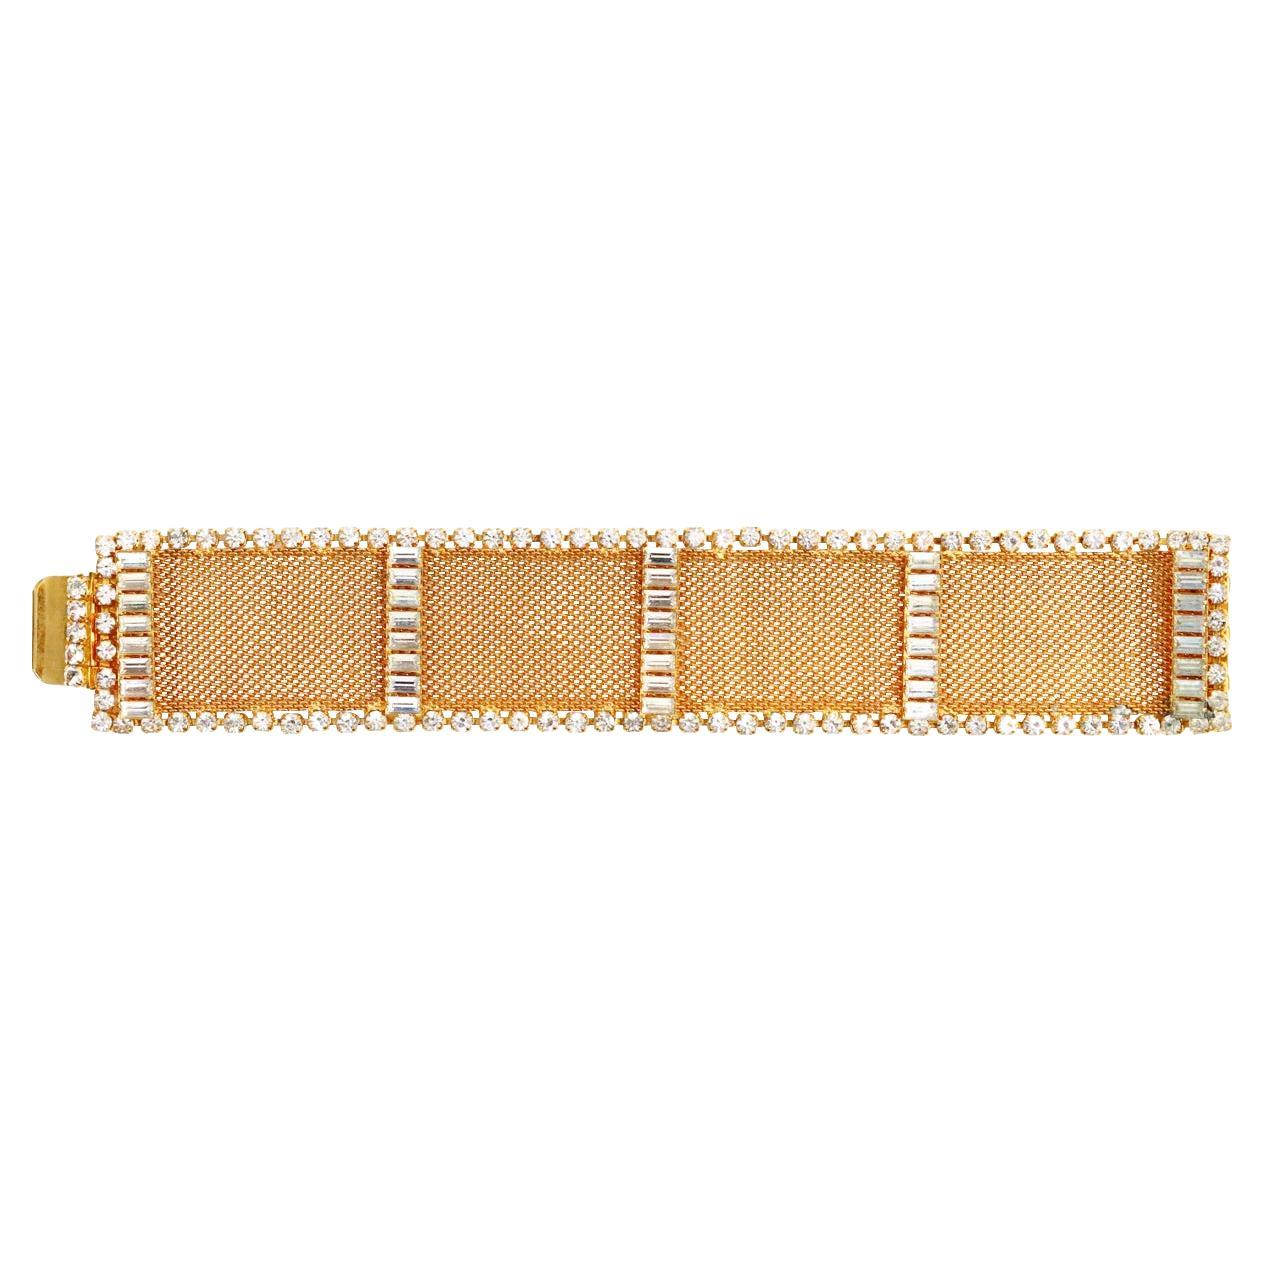 Vintage Delillo Gold Mesh mit Kristallen Armband, ca. 1970er Jahre